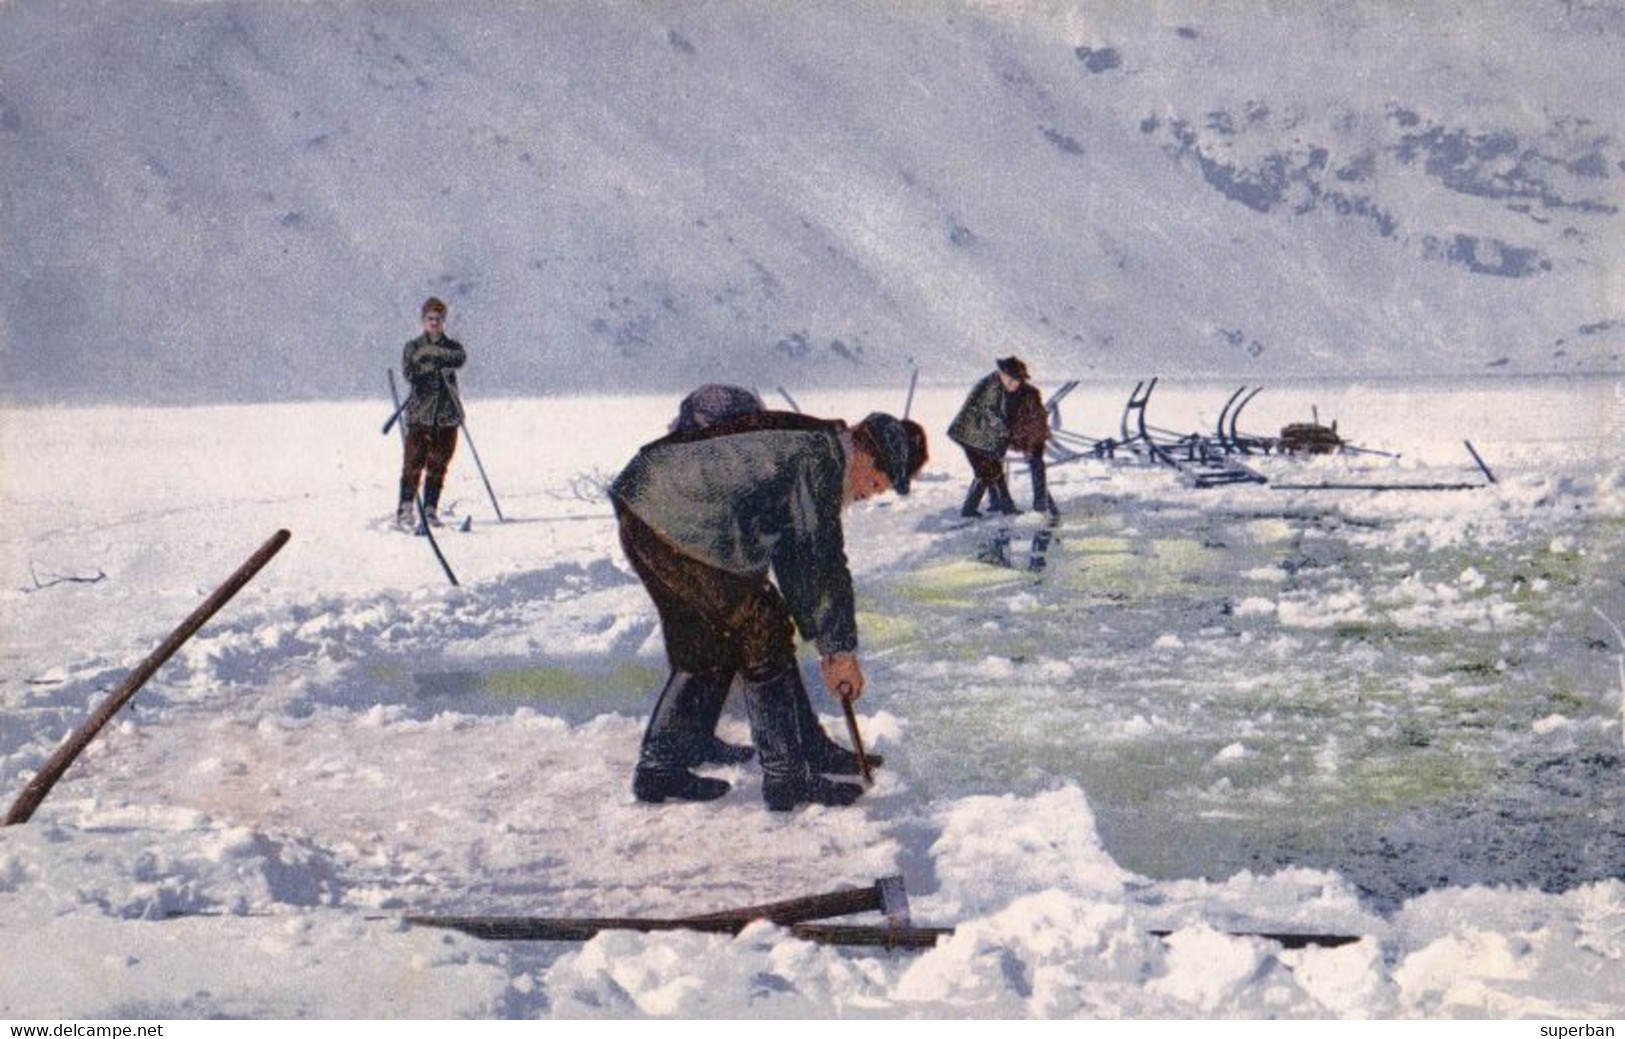 DAS RIESENGEBIRGE Im WINTER : EISGEWINNUNG AUF DEM GROSSEN TEICH / ICE RECOVERY ON THE LARGE POND ~ 1910 (ak953) - Schlesien